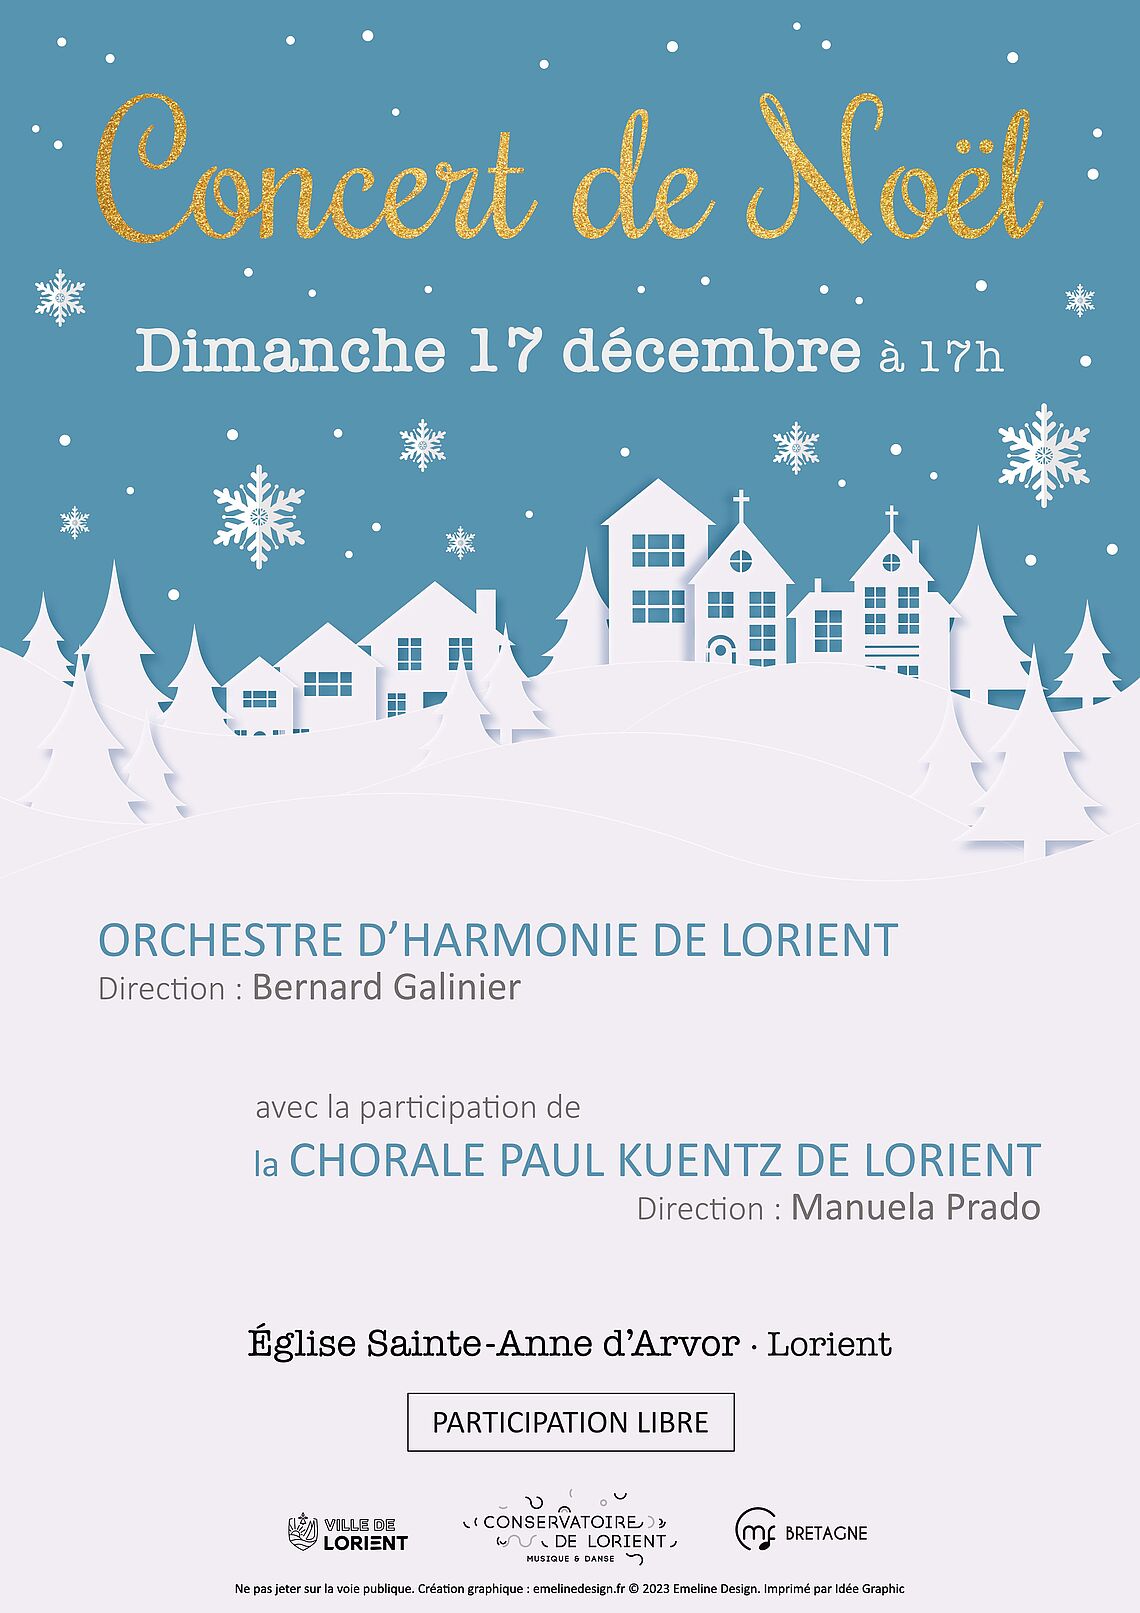 Concert de l'orchestre d'harmonie de Lorient et chorale Paul Kuentz, le 17 décembre à 17h à l'église Ste Anne d'Arvor. Cliquez pour agrandir !   